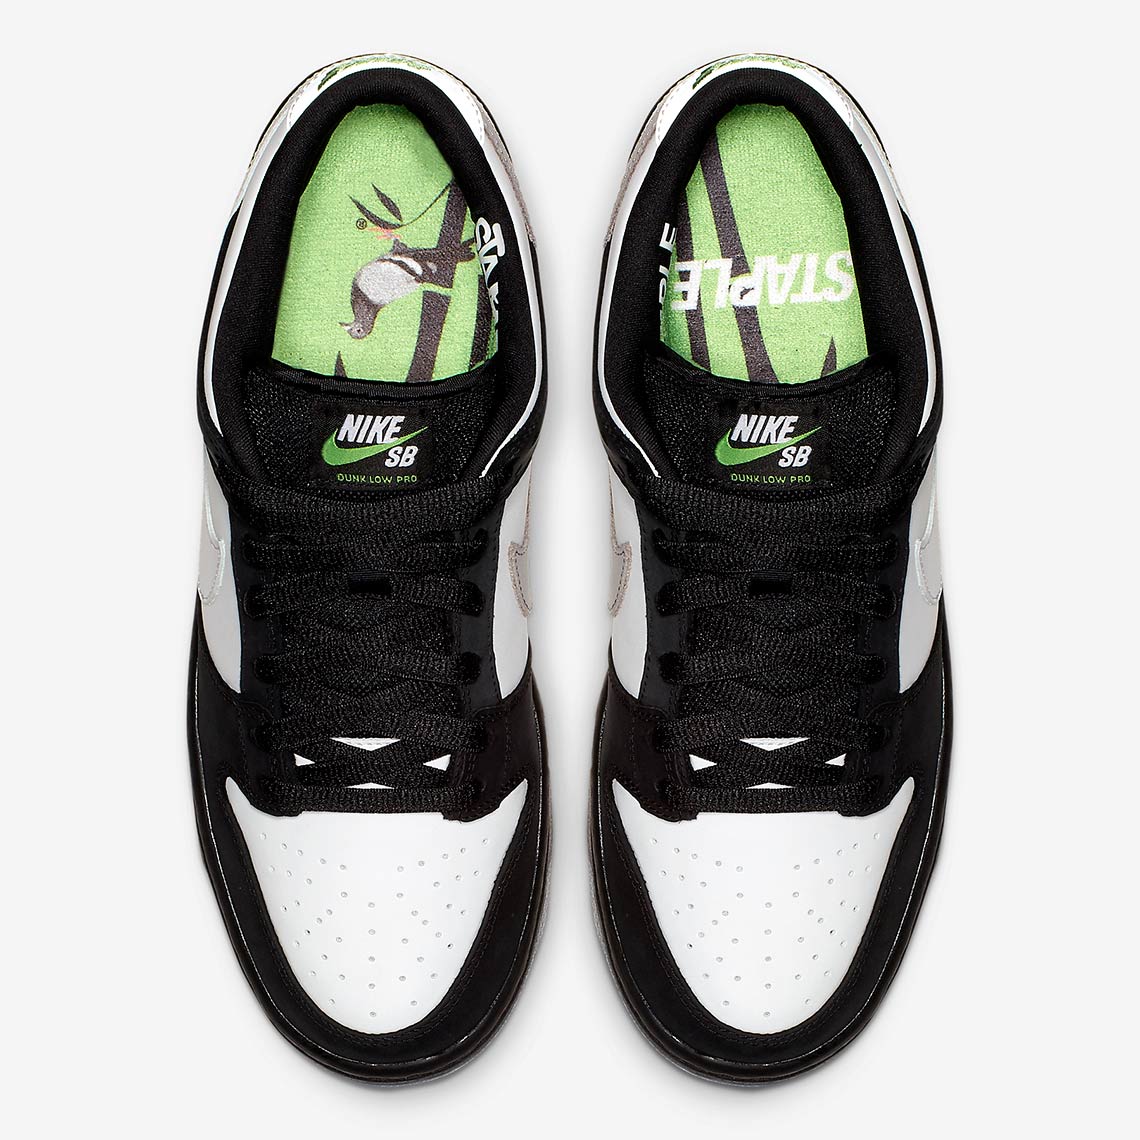 Nike Sb Dunk Low Staple Panda Pigeon Bv1310 013 2